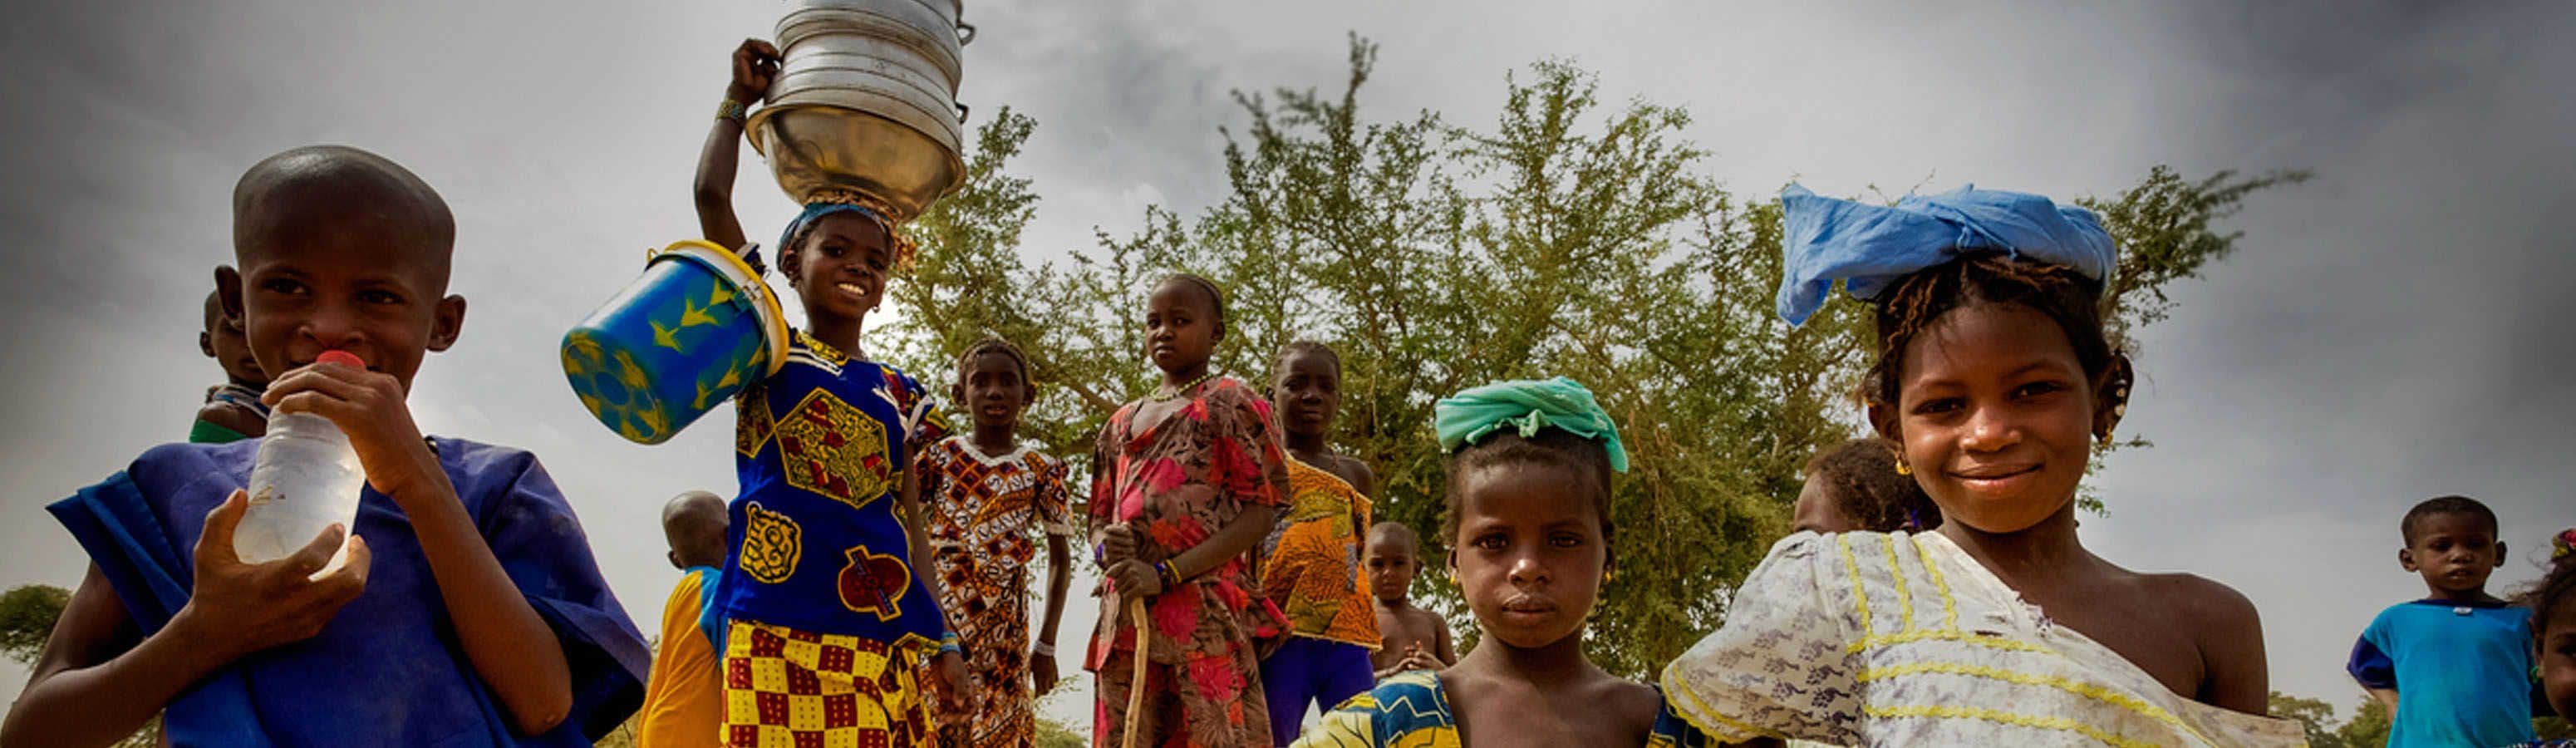 Szenegál - Afrika kezdőknek